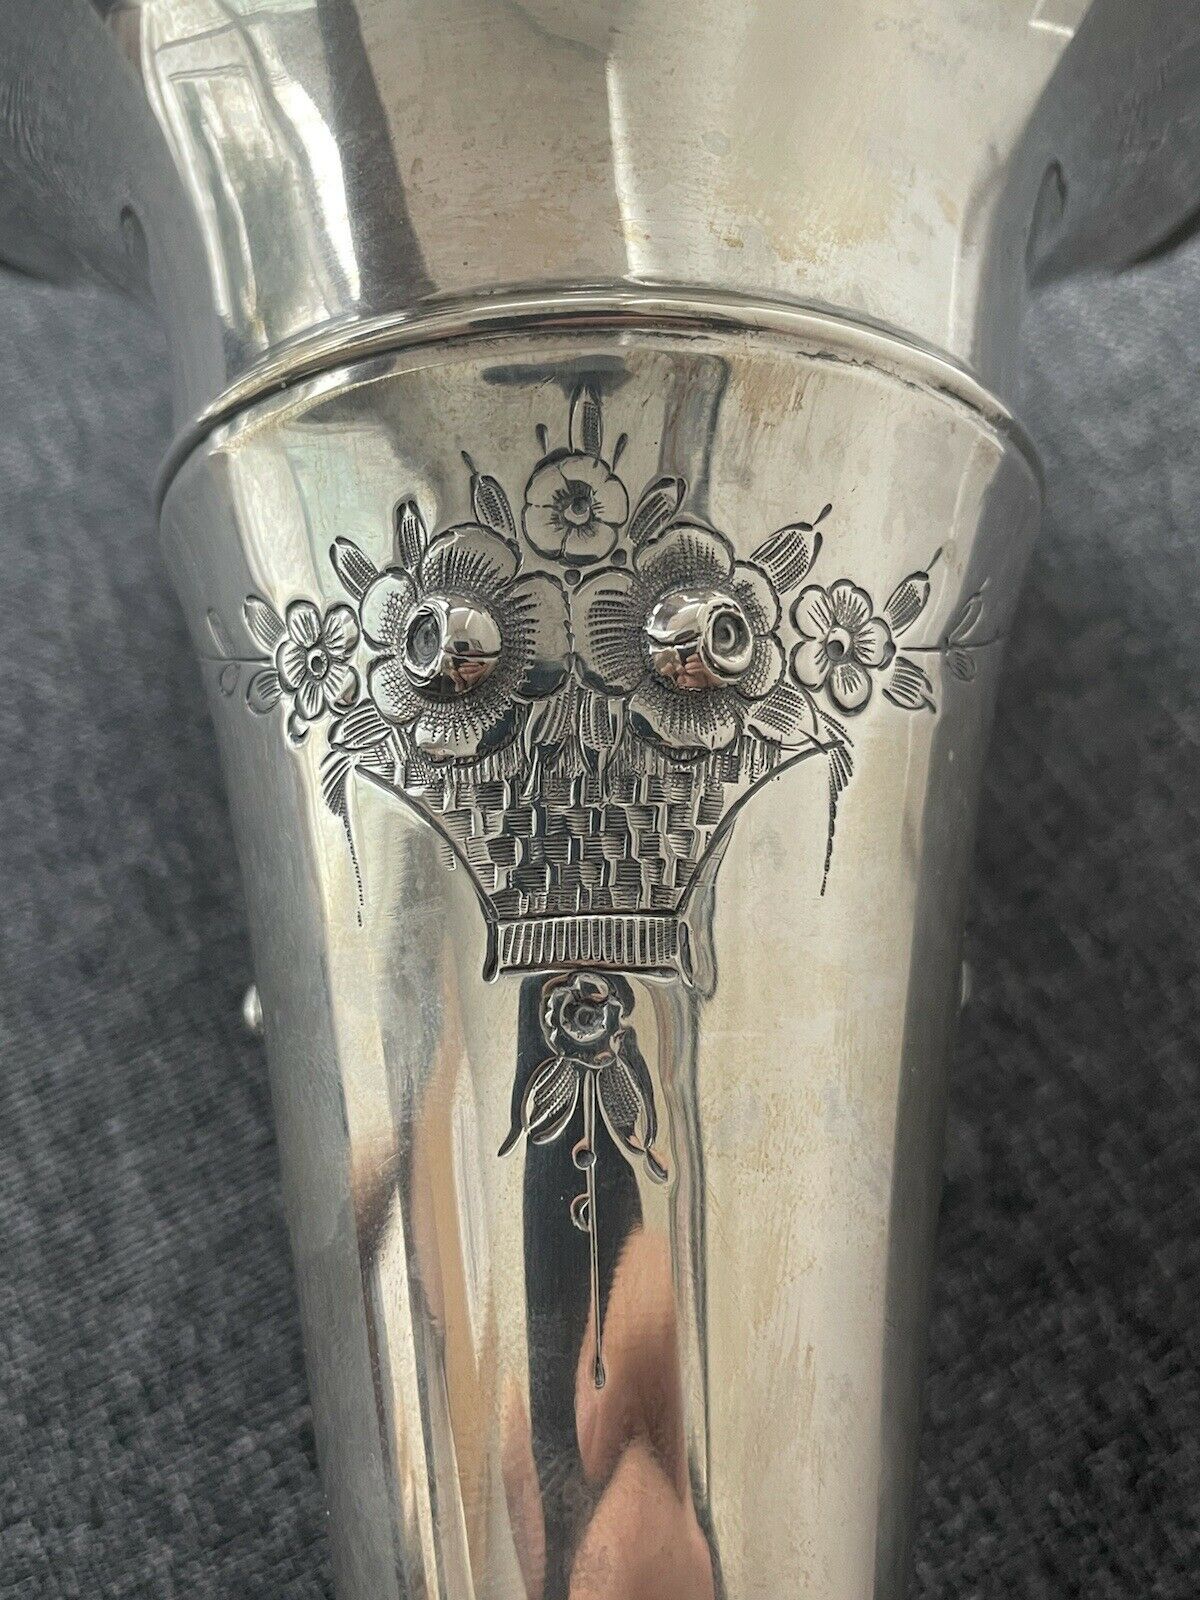 Schmitz Antique Sterling Silver Engraved Floral Handled 15" tall vase c1920 15oz